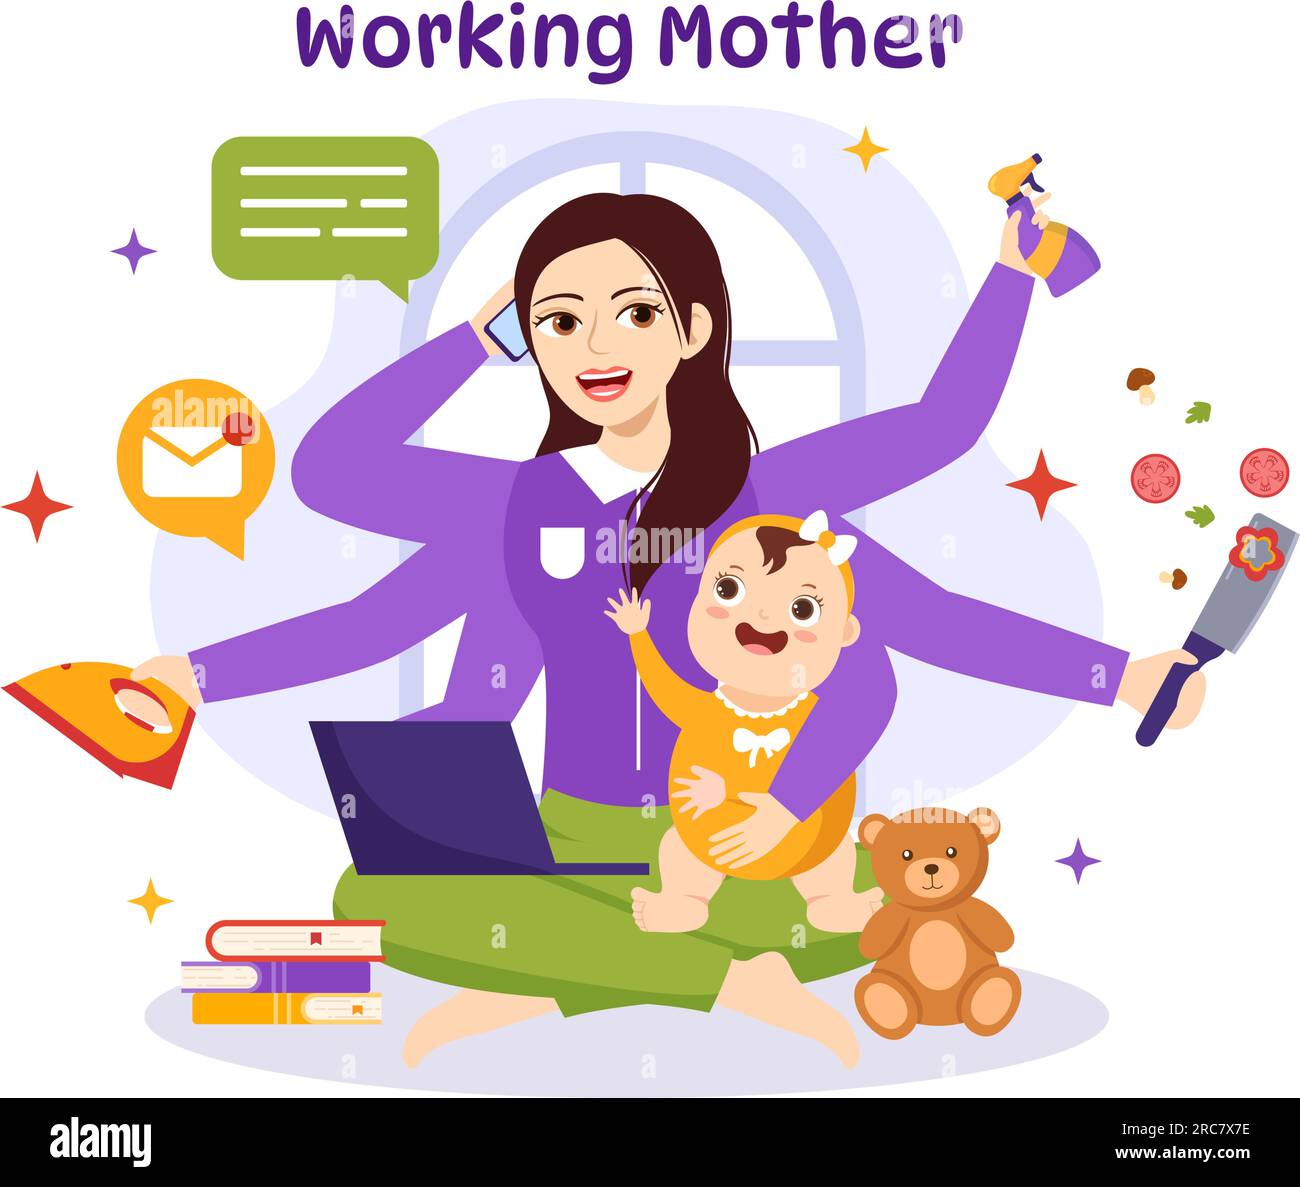 Working Mother Vector Illustration mit Müttern, die arbeiten und sich zu Hause um ihre Kinder kümmern, in Multitasking Cartoon Hand Drawn Templates Stock Vektor